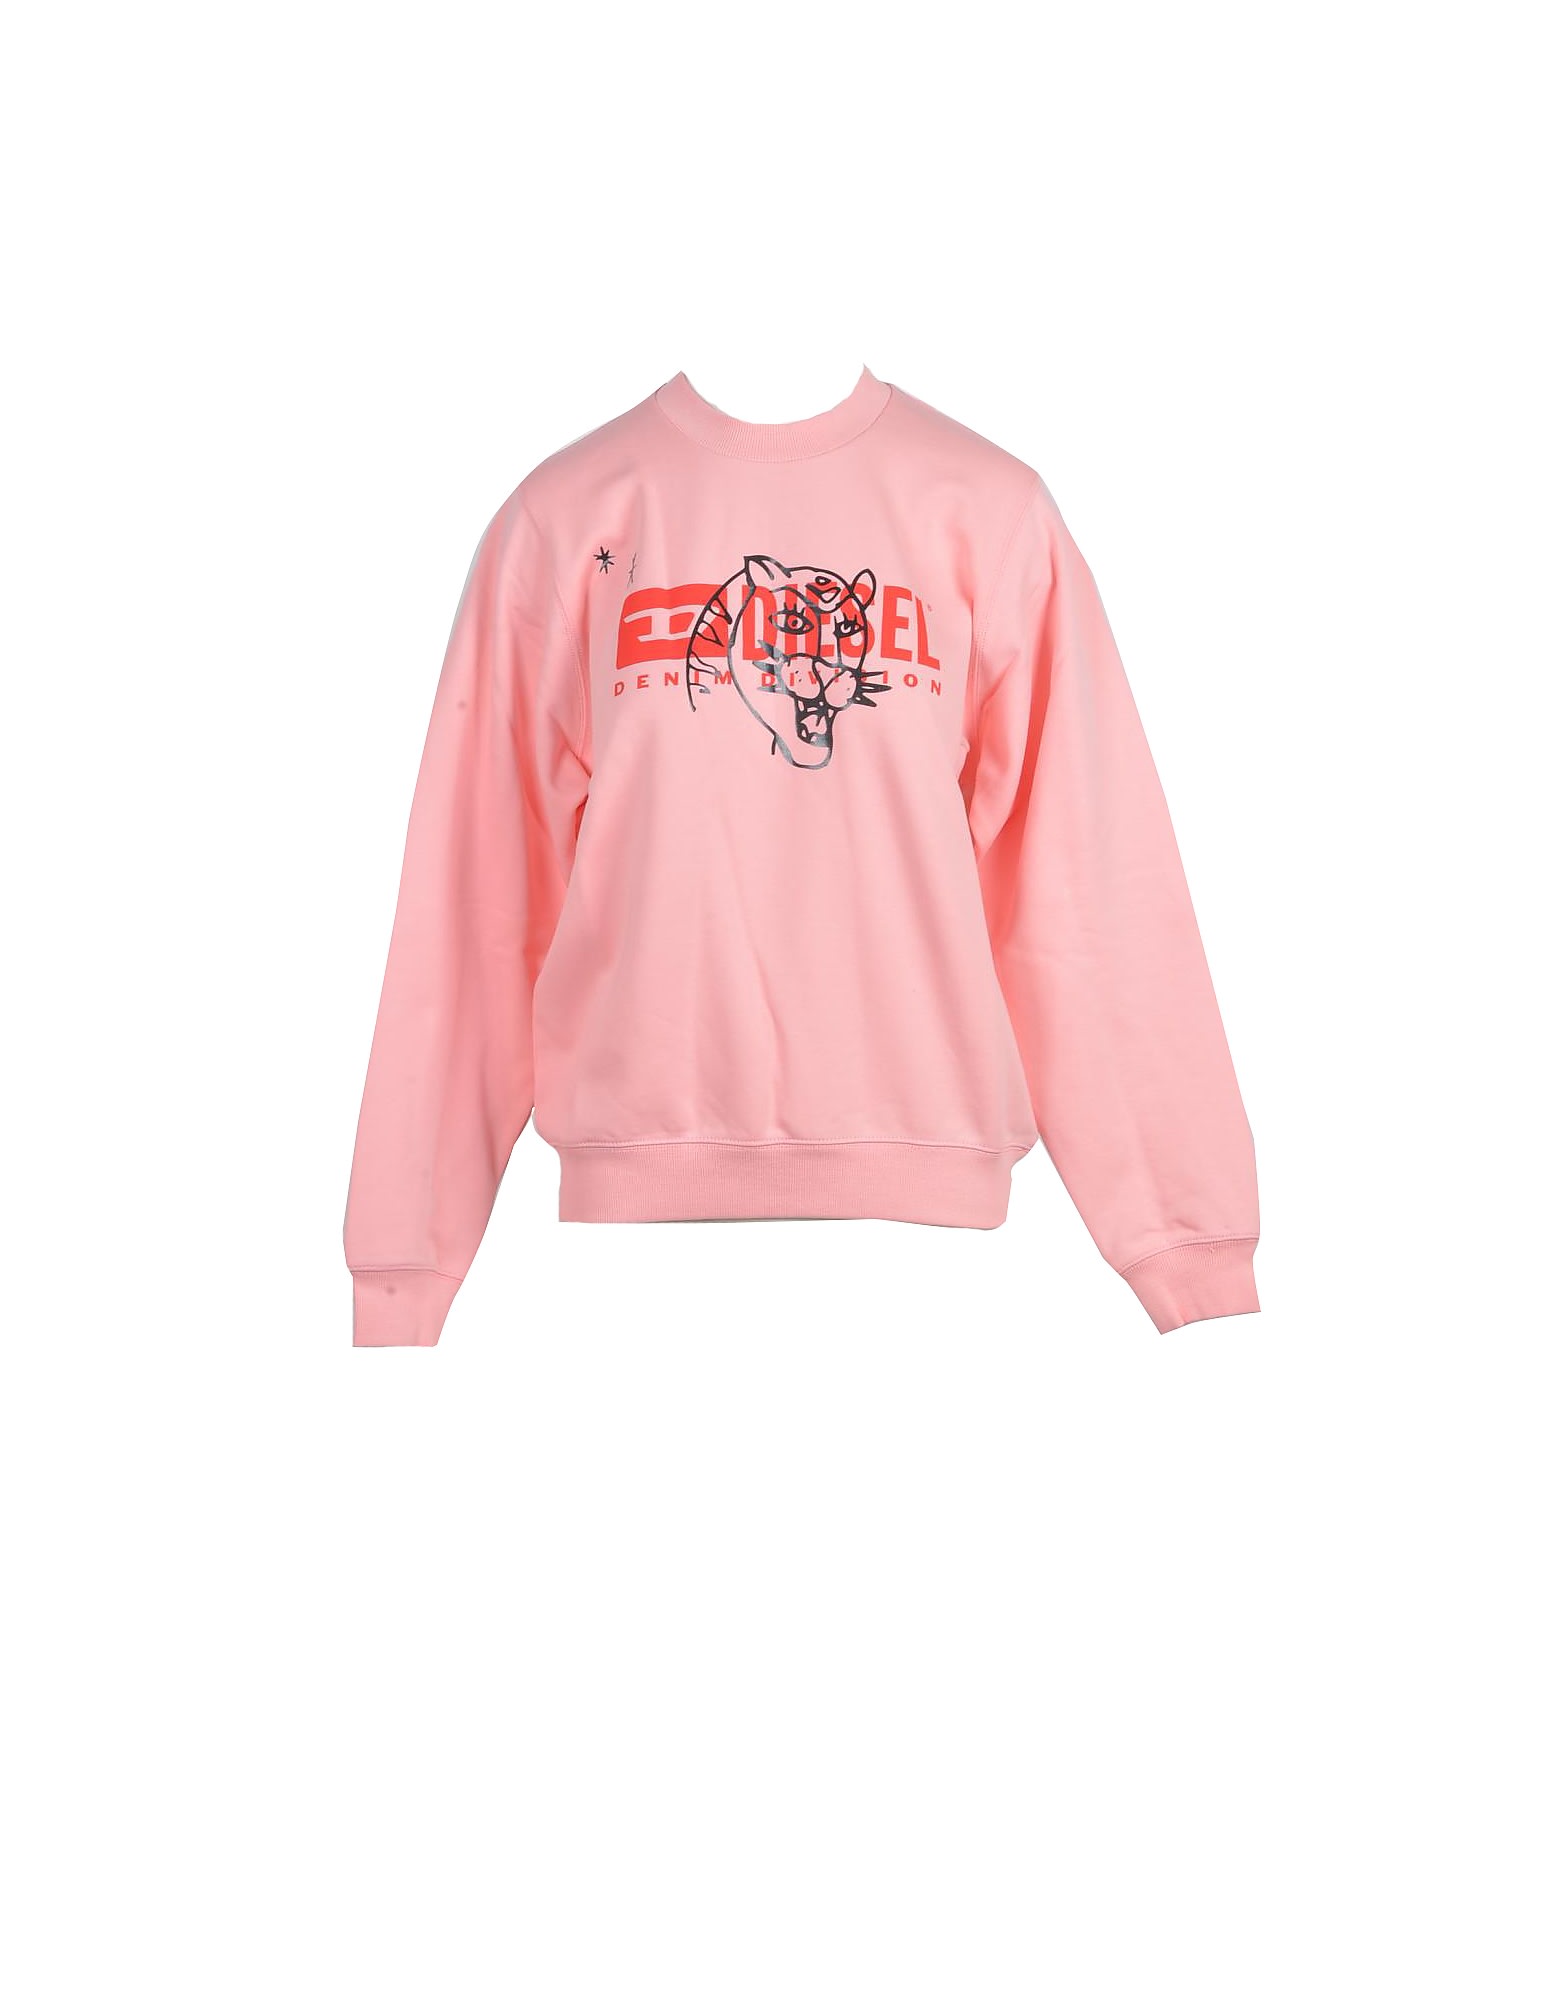 Diesel Womens Pink Sweatshirt